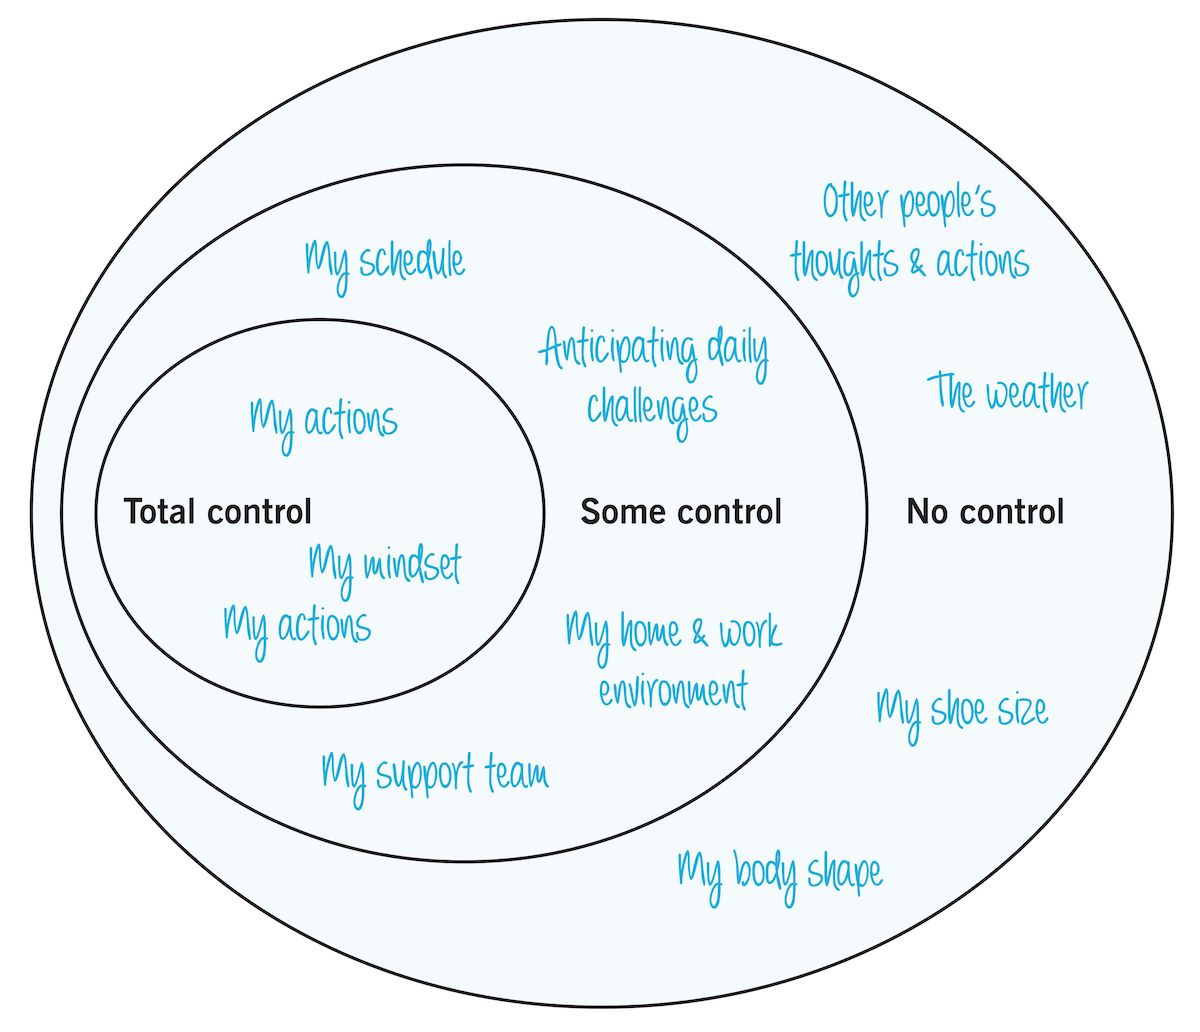 控制范围:描述三个重叠圆圈的图形，标有“完全控制”、“部分控制”和“无控制”。人们可以使用图像来集中注意力在他们可以控制的事情上，从而降低他们的压力。